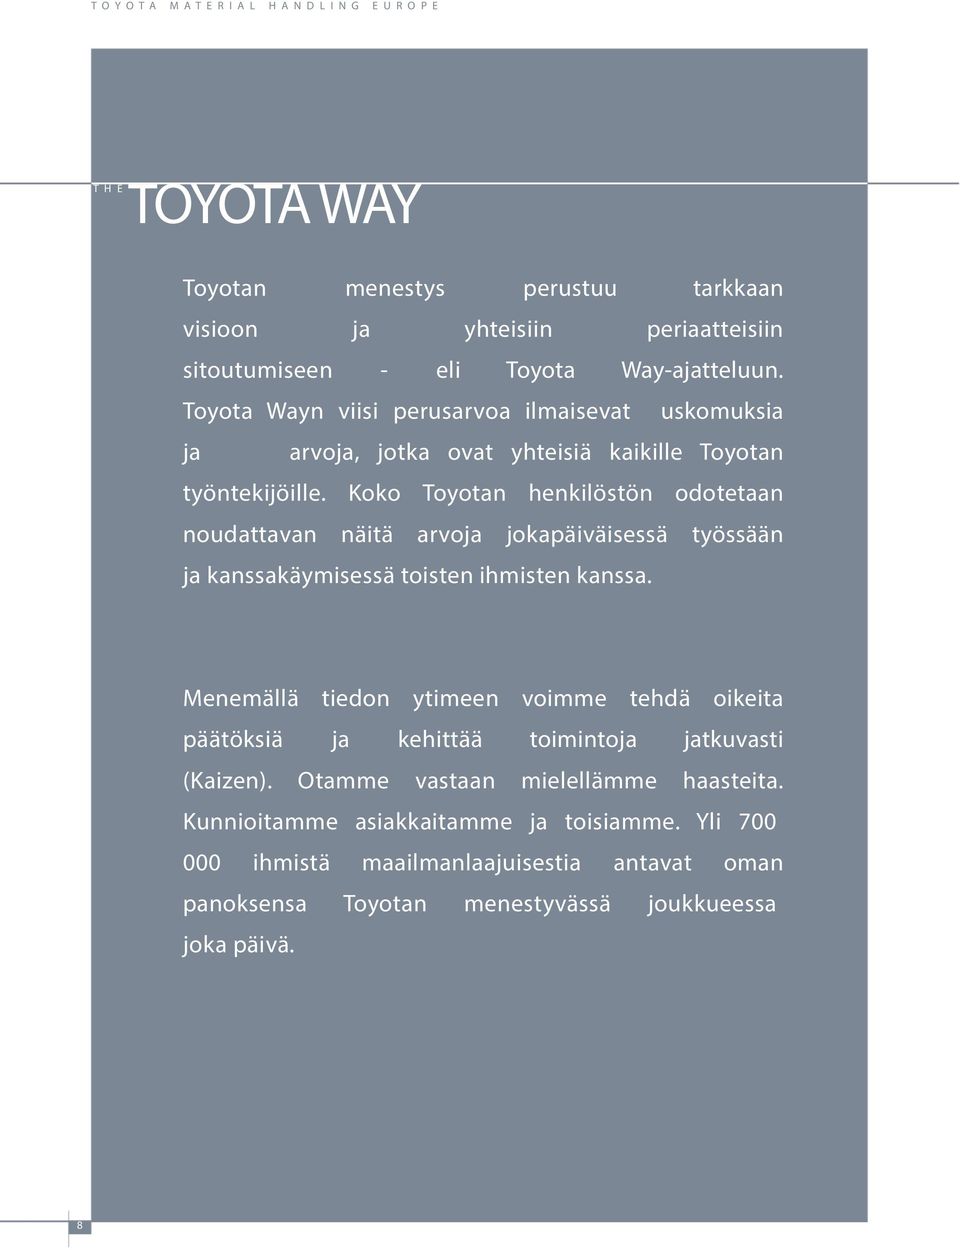 Koko Toyotan henkilöstön odotetaan noudattavan näitä arvoja jokapäiväisessä työssään ja kanssakäymisessä toisten ihmisten kanssa.